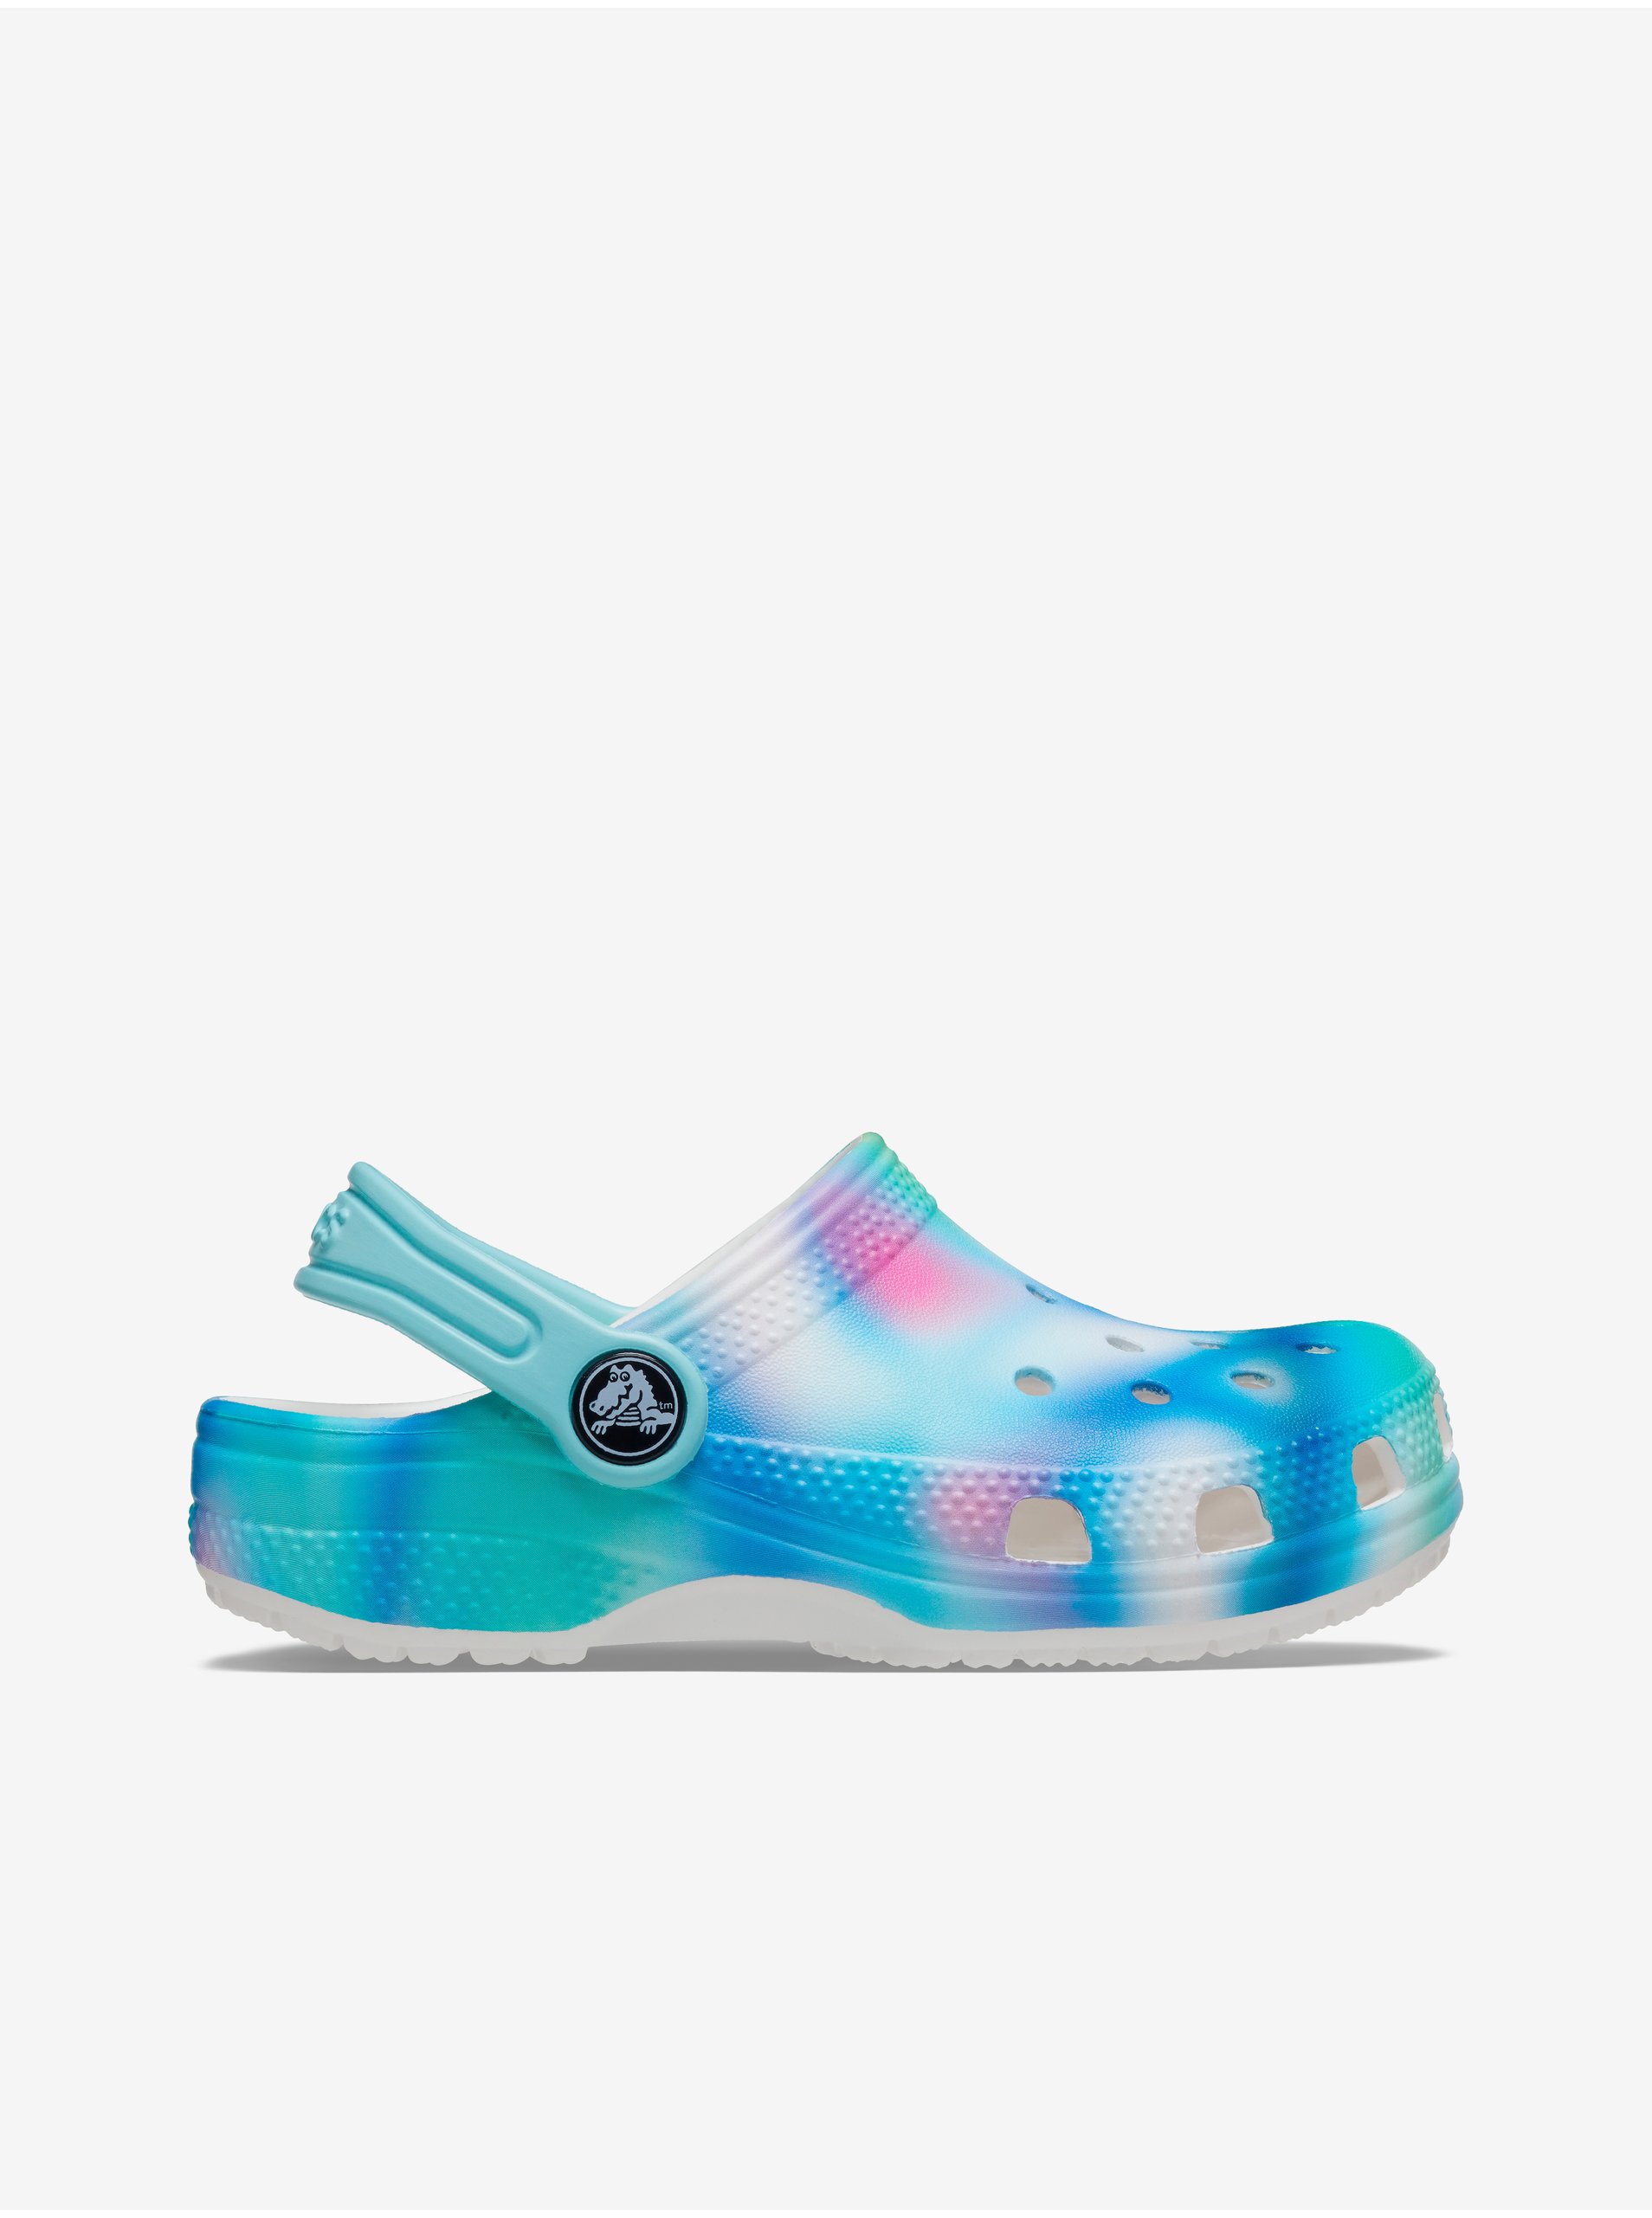 E-shop Modré vzorované holčičí pantofle Crocs